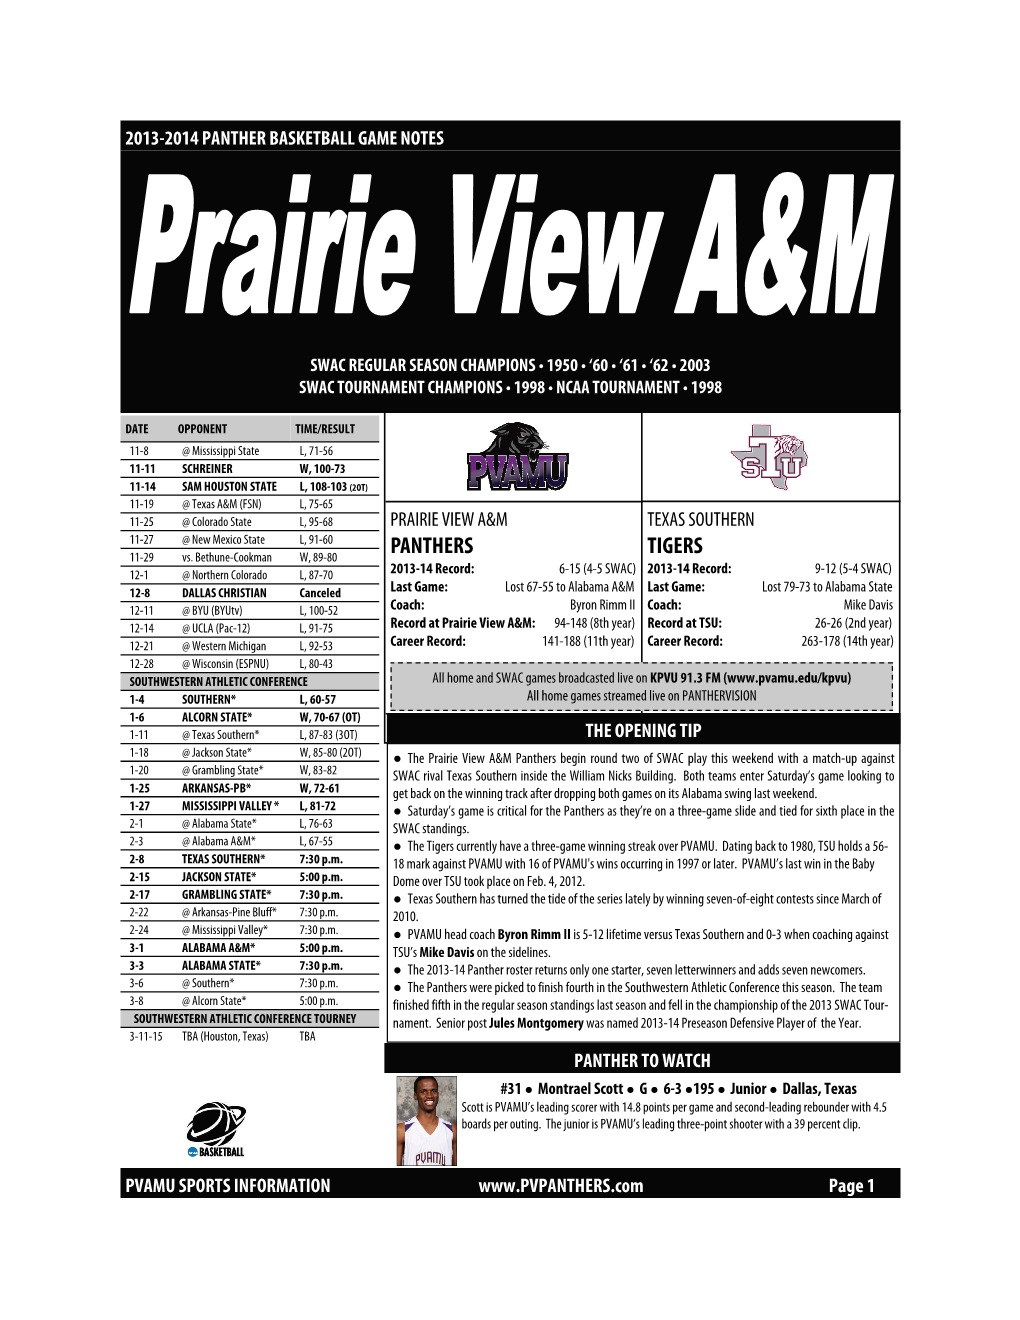 Prairie View A&M